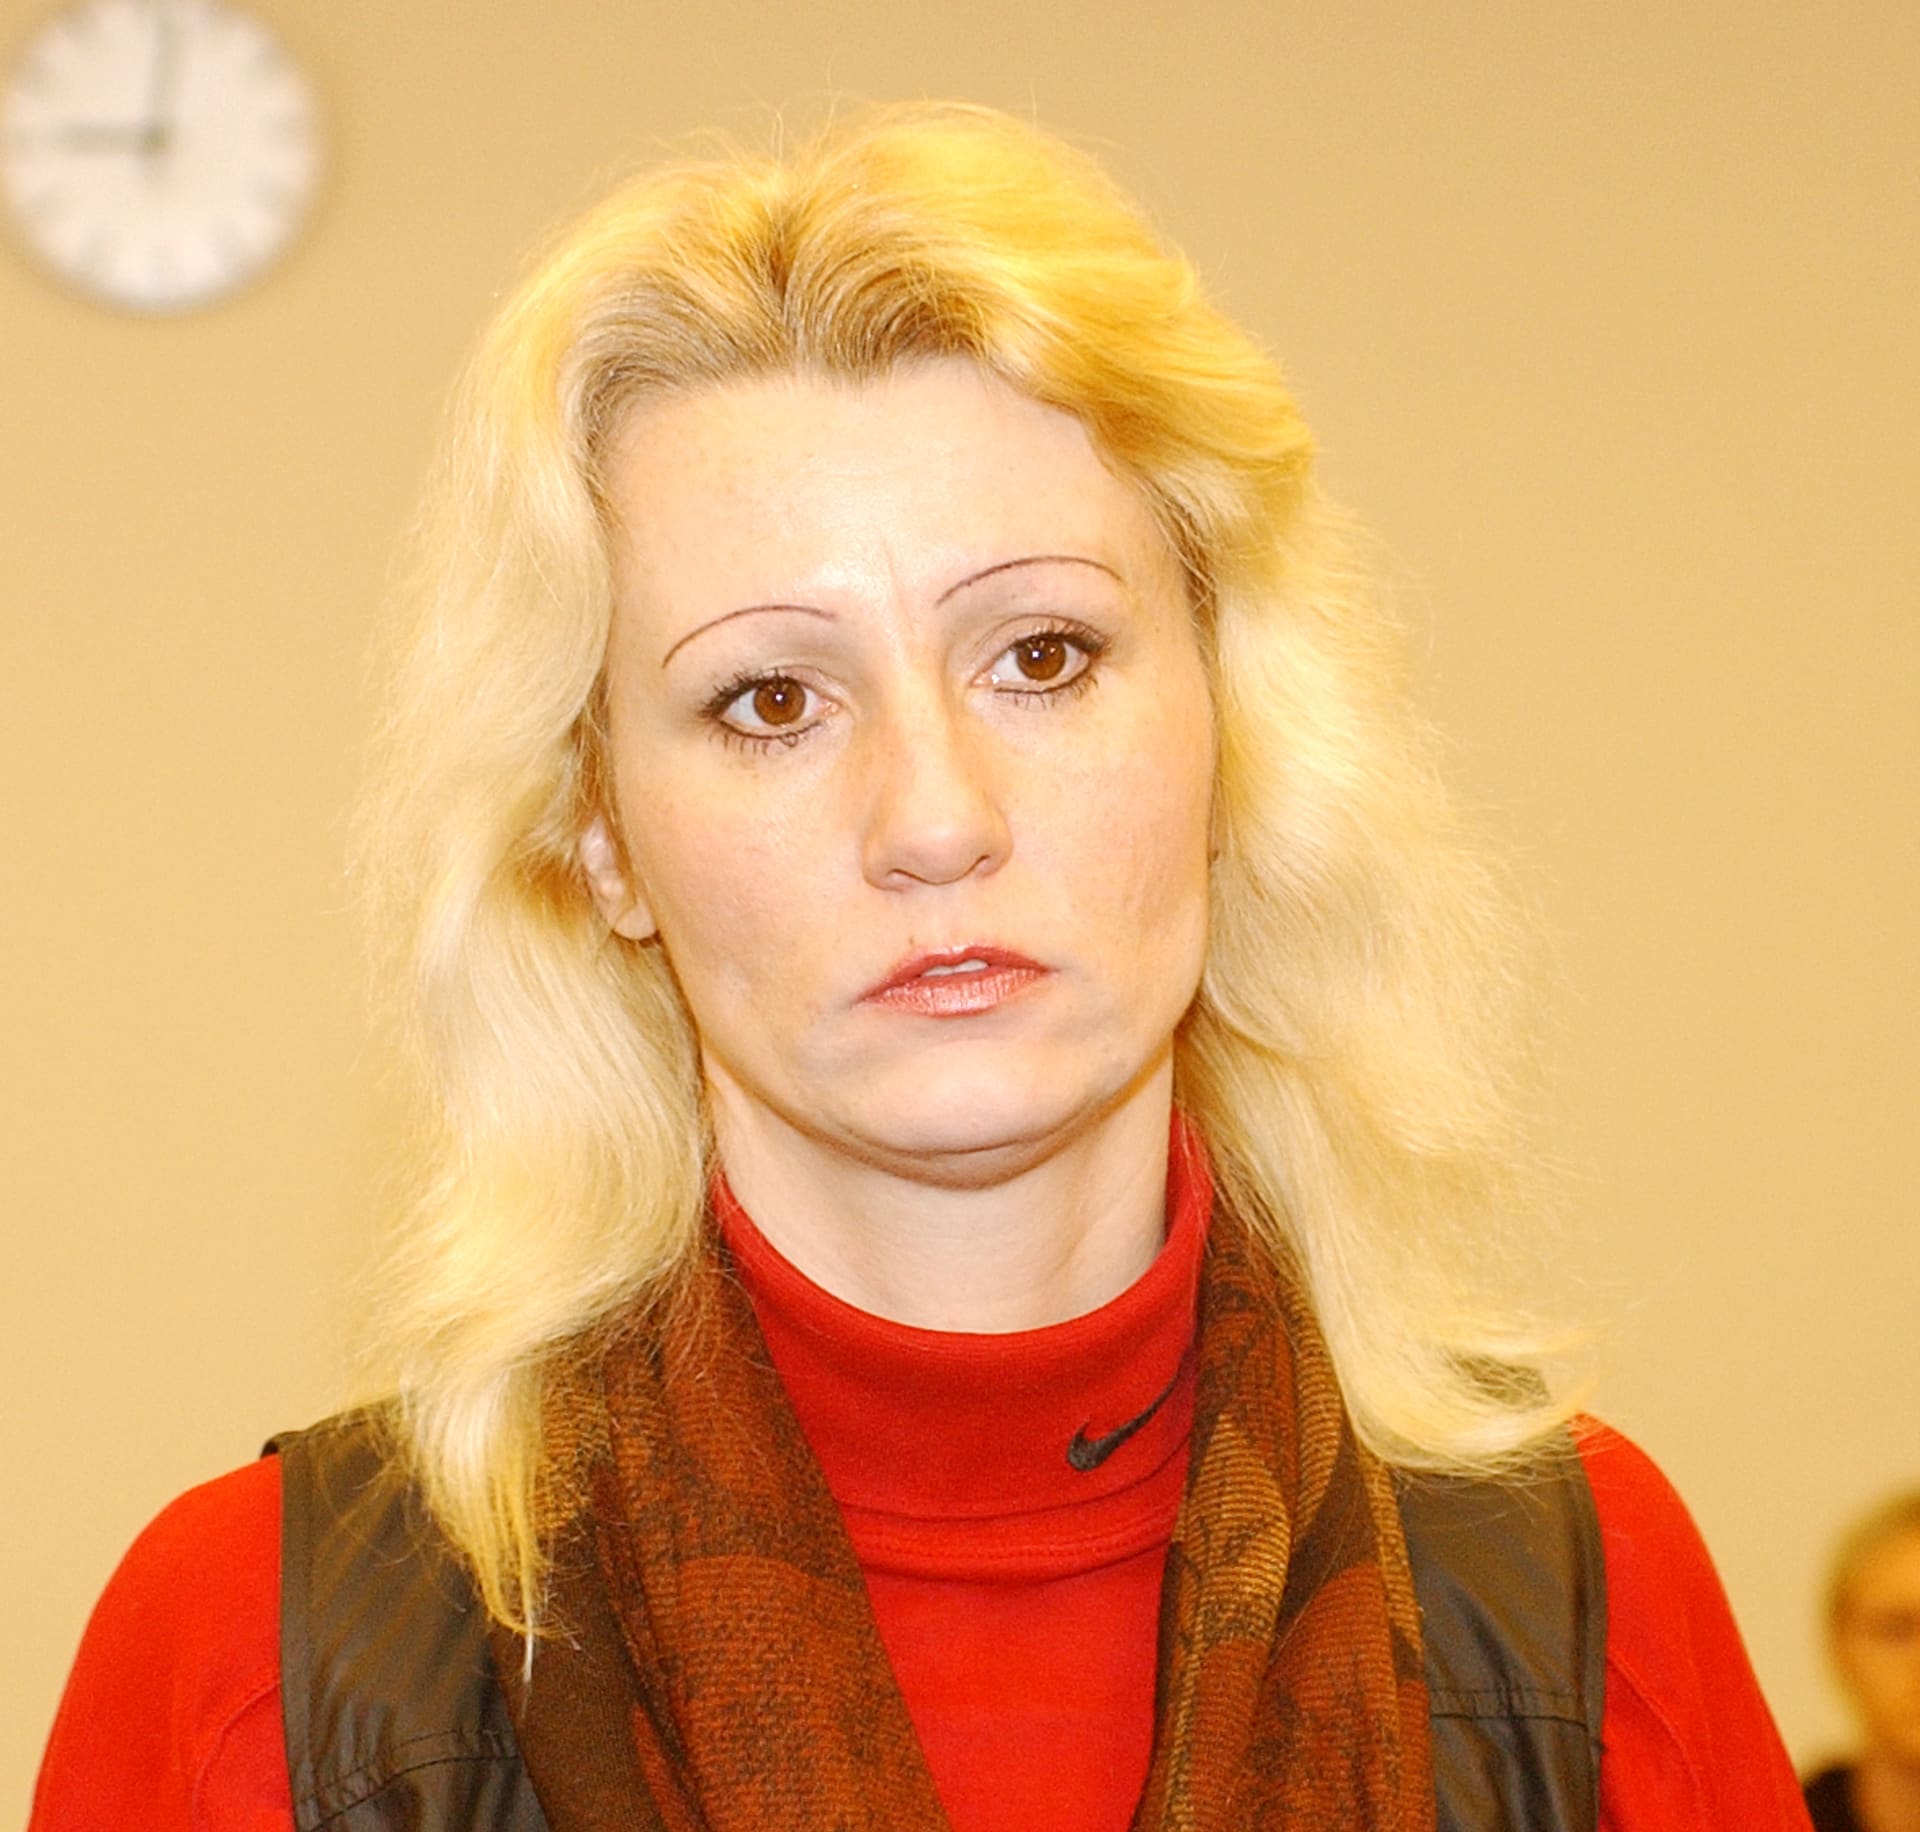 Jaroslavu Fabiánovou hnala nenávist, protože ona sama se vmládí stala obětí násilného činu.